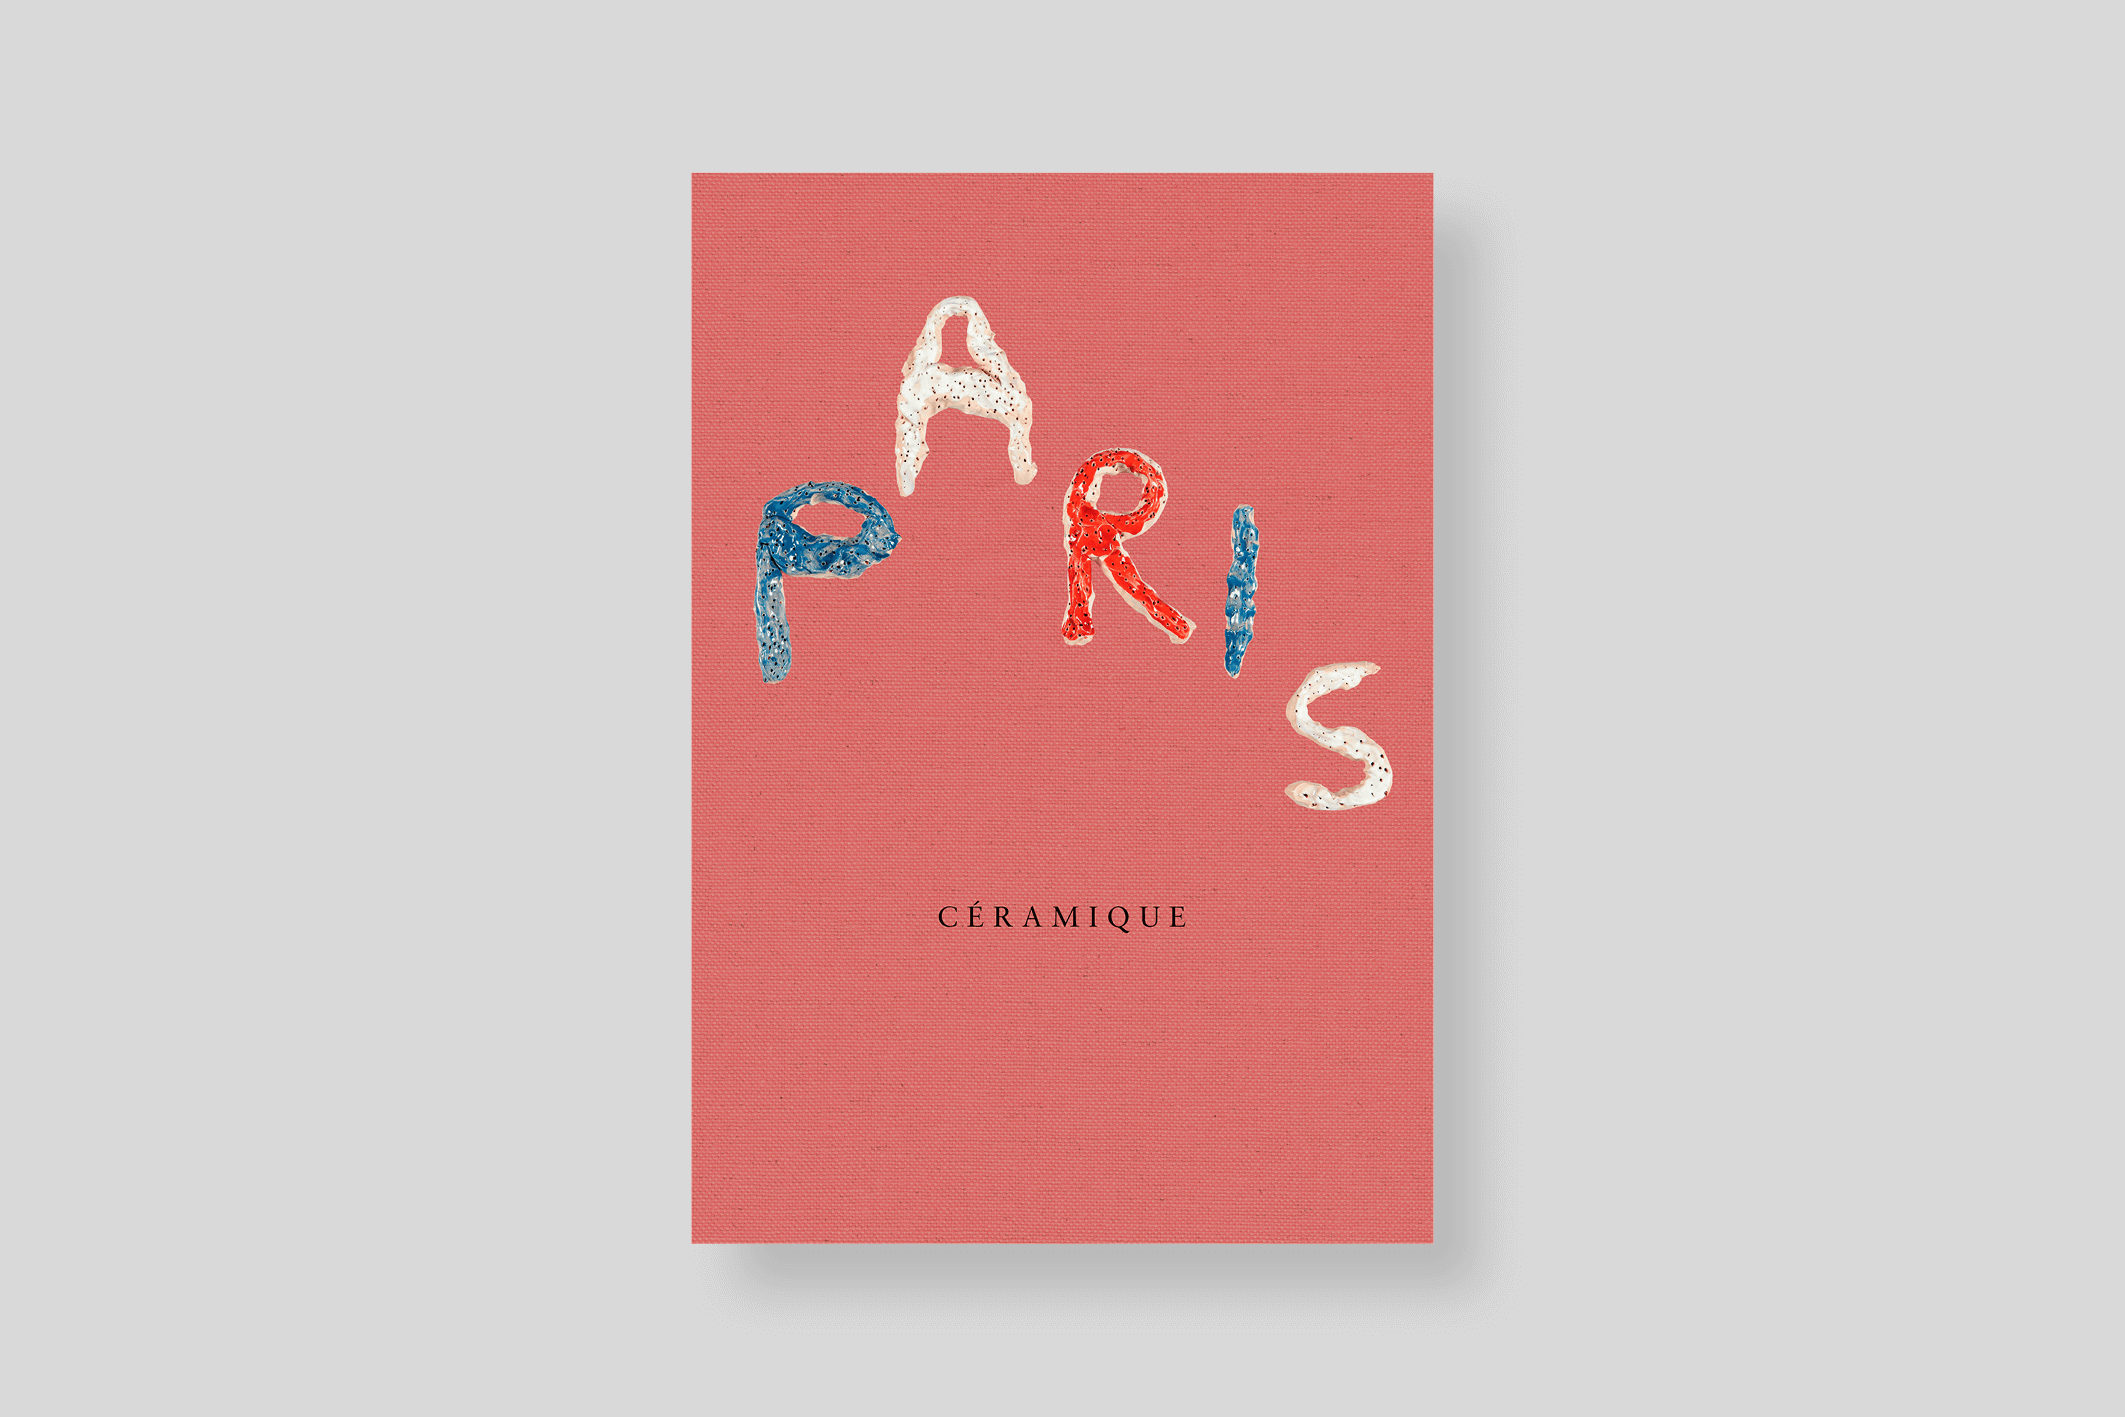 paris-ceramique-nieves-publishing-cover